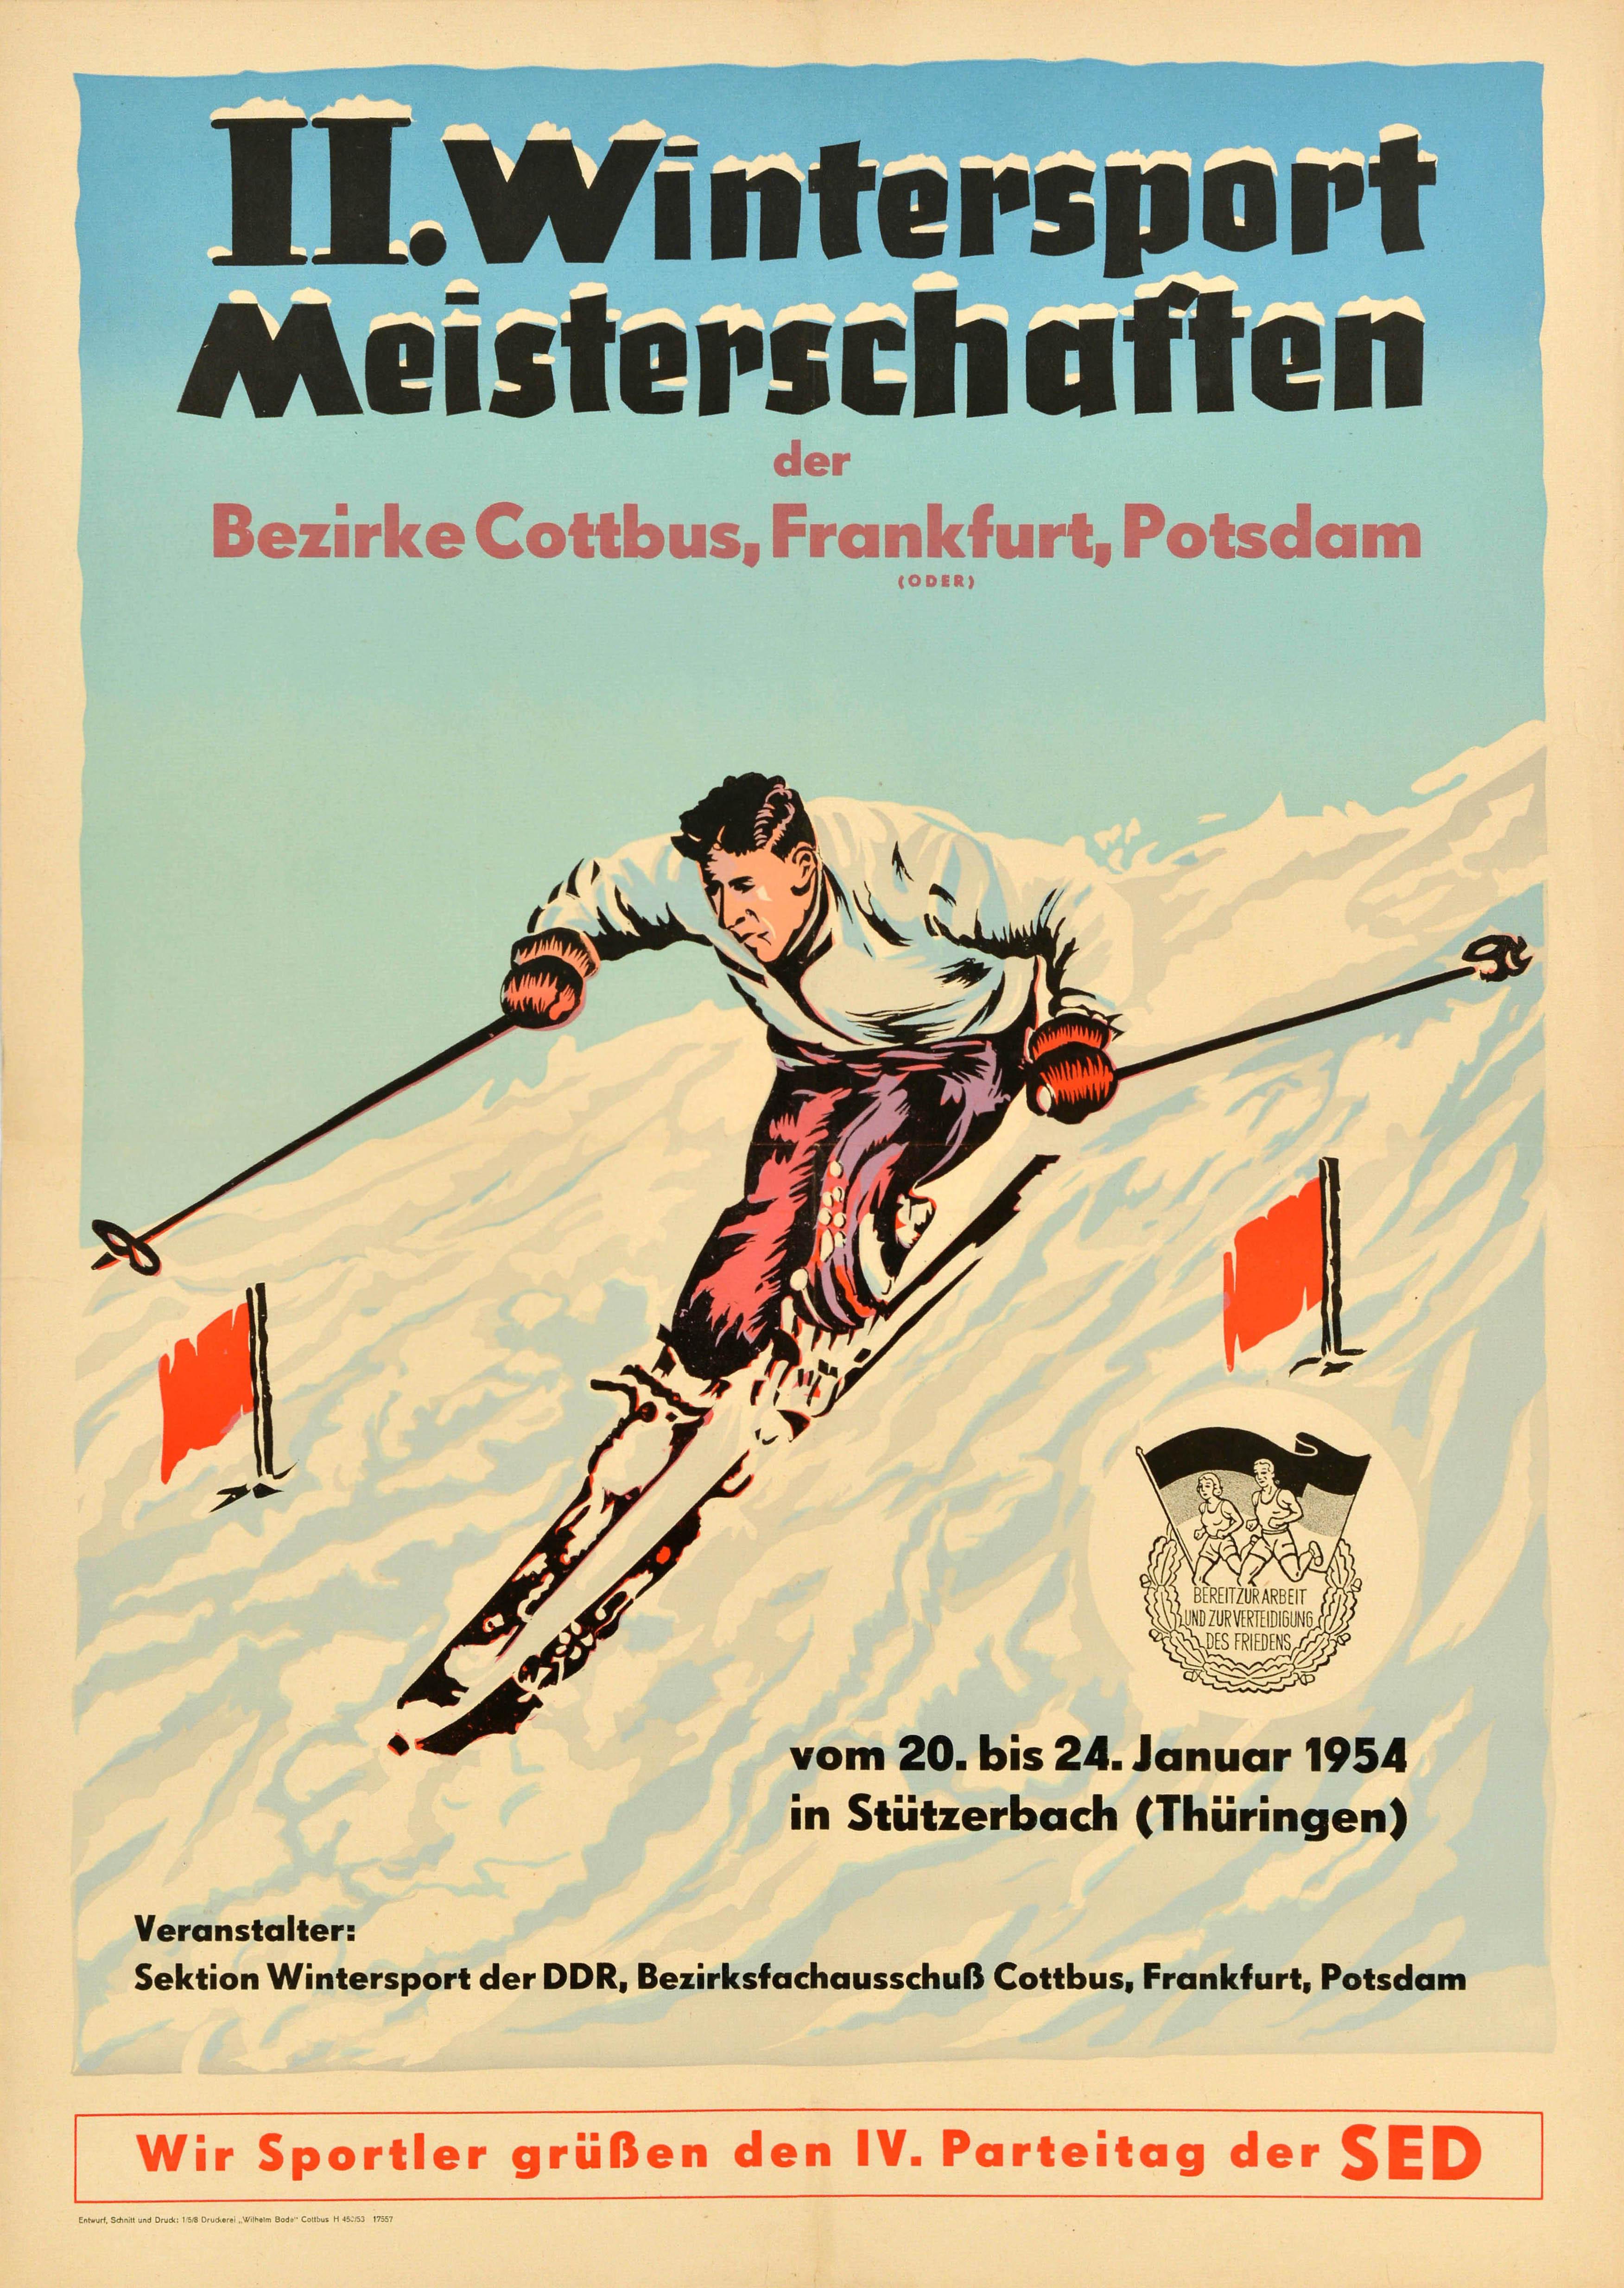 Unknown Print - Original Vintage Poster Winter Sport Meisterschaften Championship Ski Slalom Art